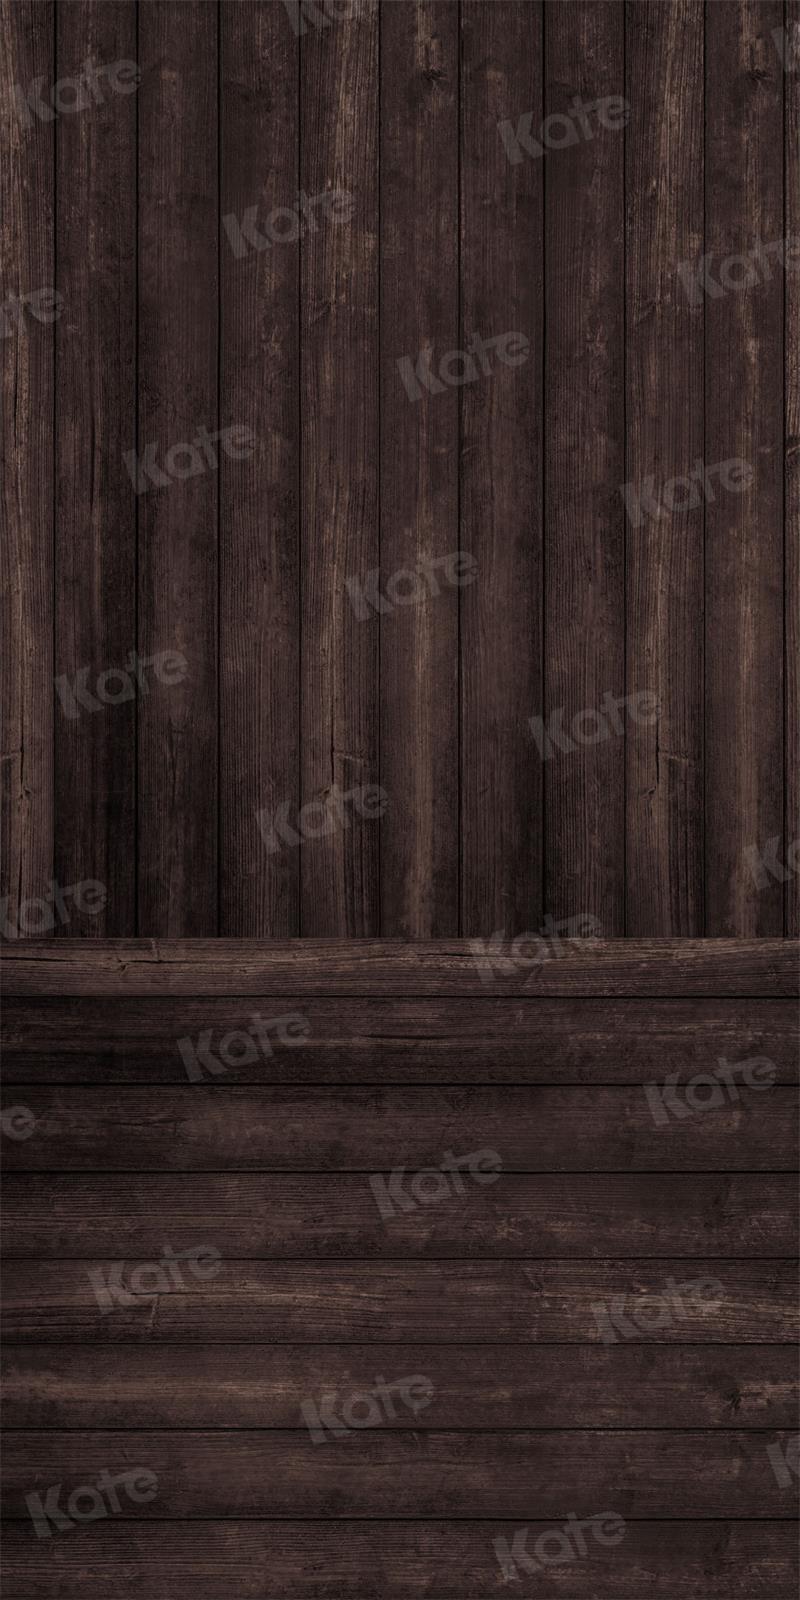 Kate Balayage Plancher Grain de bois Sombres Toile de fond pour la photographie